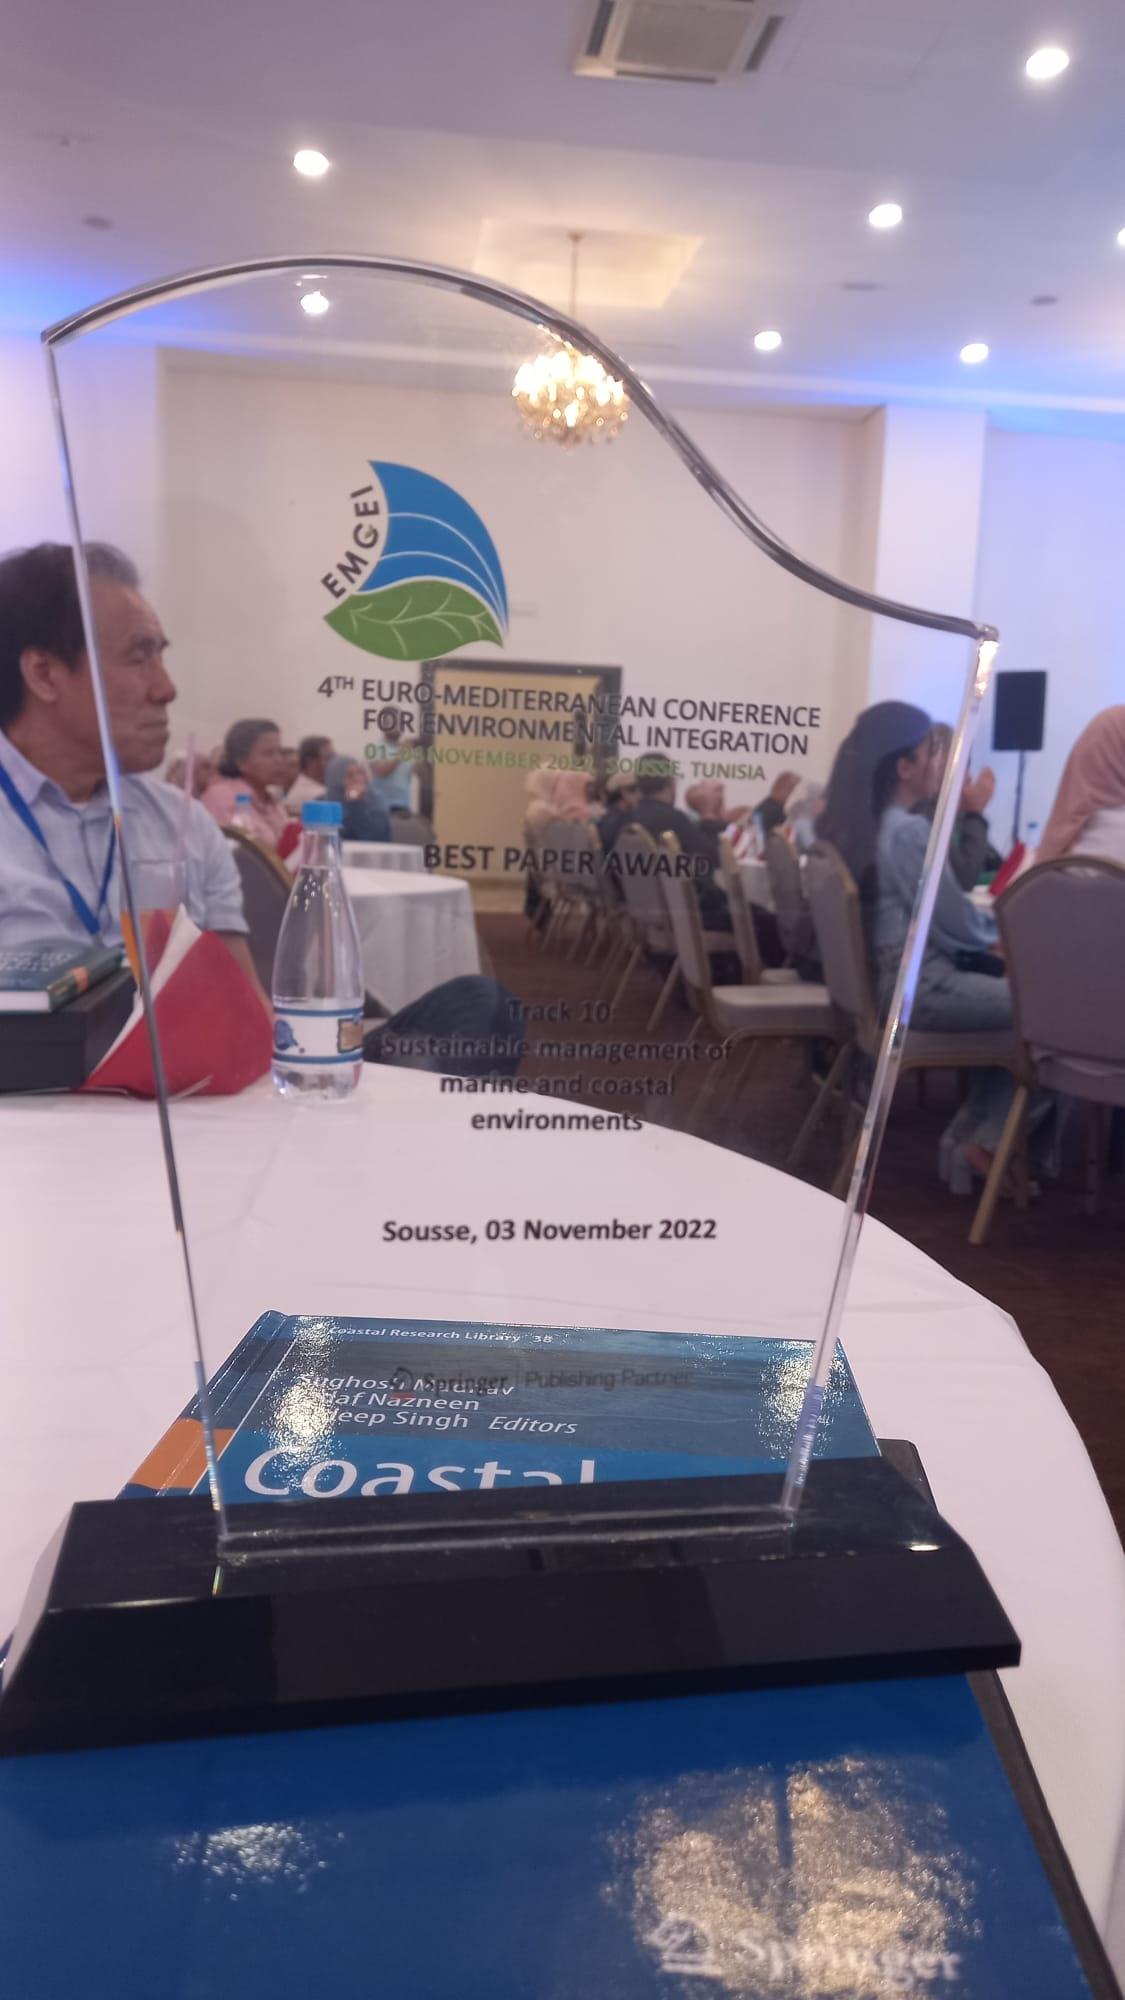 Il premio per il miglior paper della sessione “Sustainable management of marine and coastal environments”, conferito a ricerca ENEA nell’ambito della quarta Conferenza Euro-mediterranea per l’integrazione ambientale.